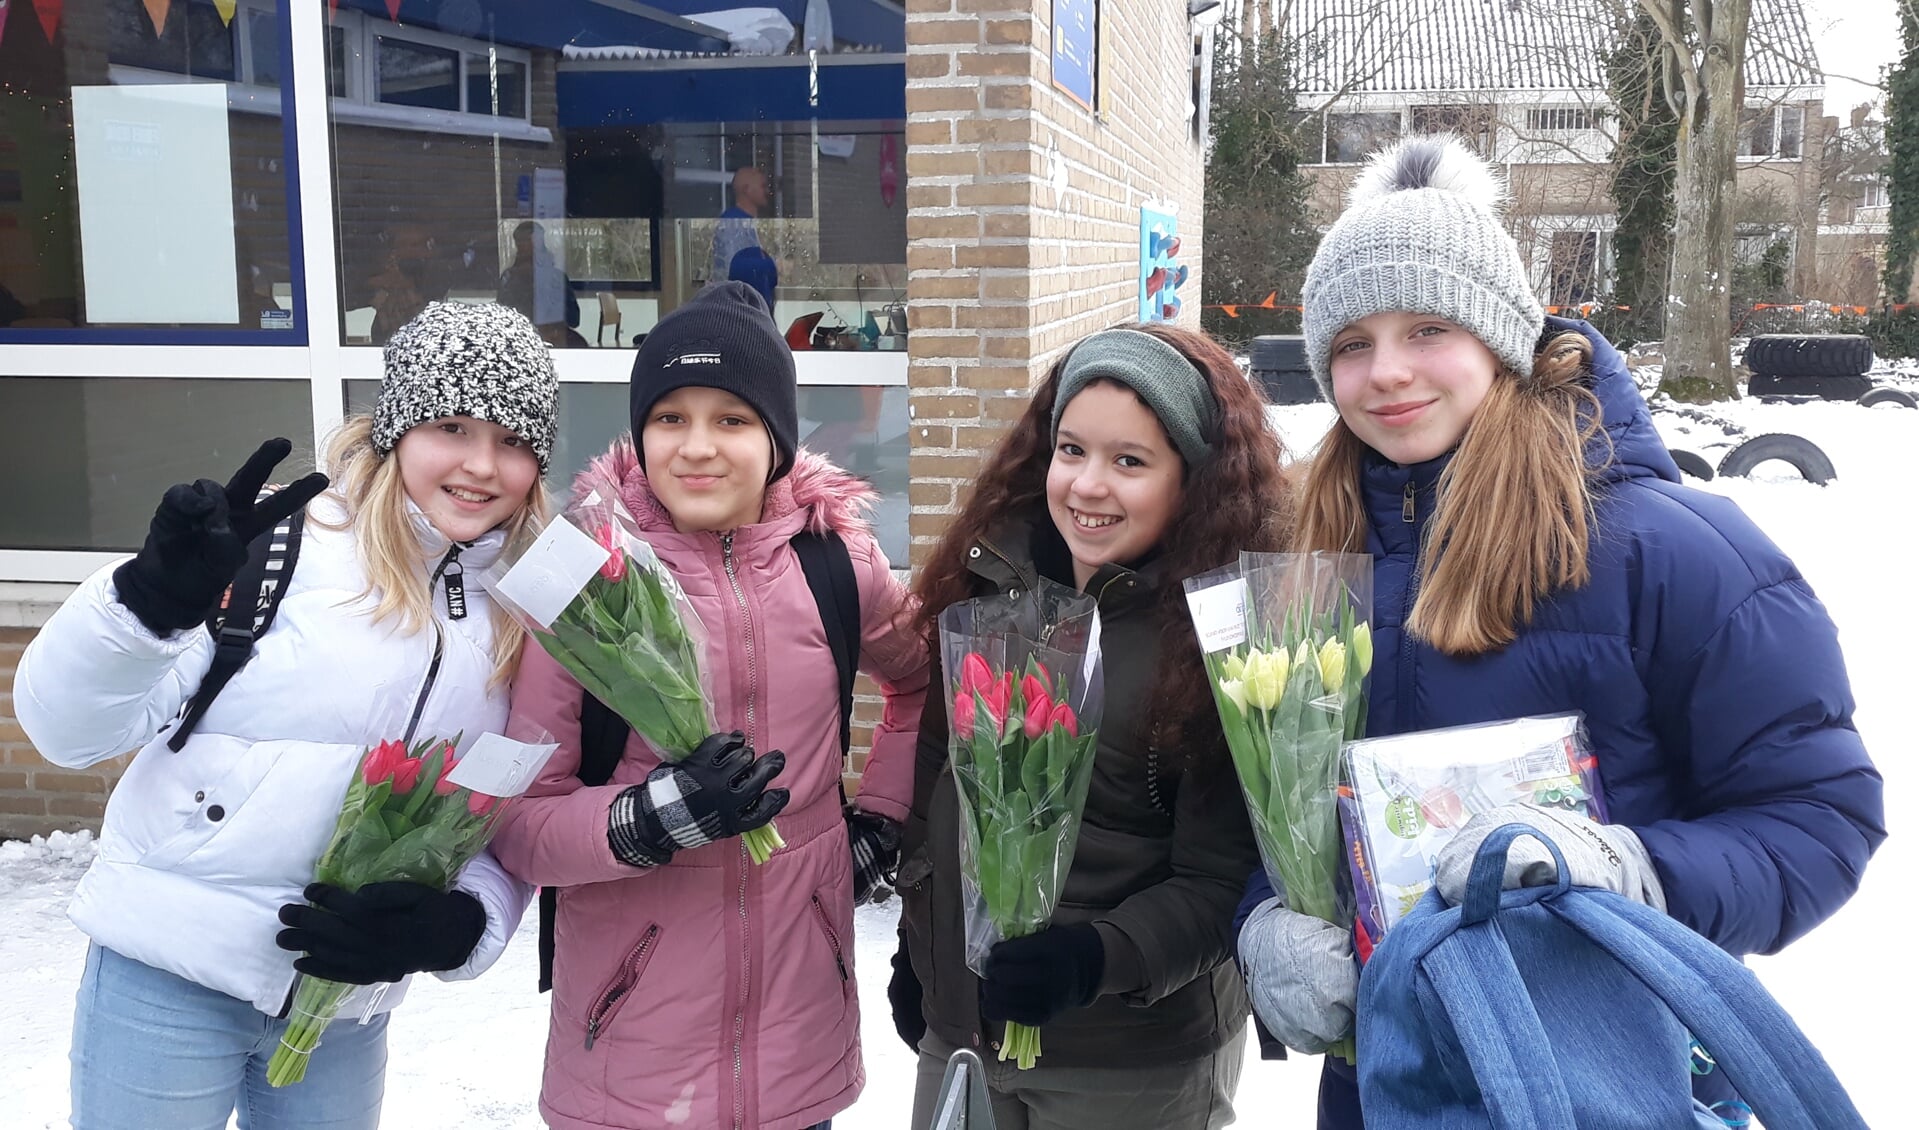 Leerlingen van De Duif met een vrolijke bos tulpen voor hun ouders, als bedankje voor de inzet en begeleiding tijdens de schoolsluiting.